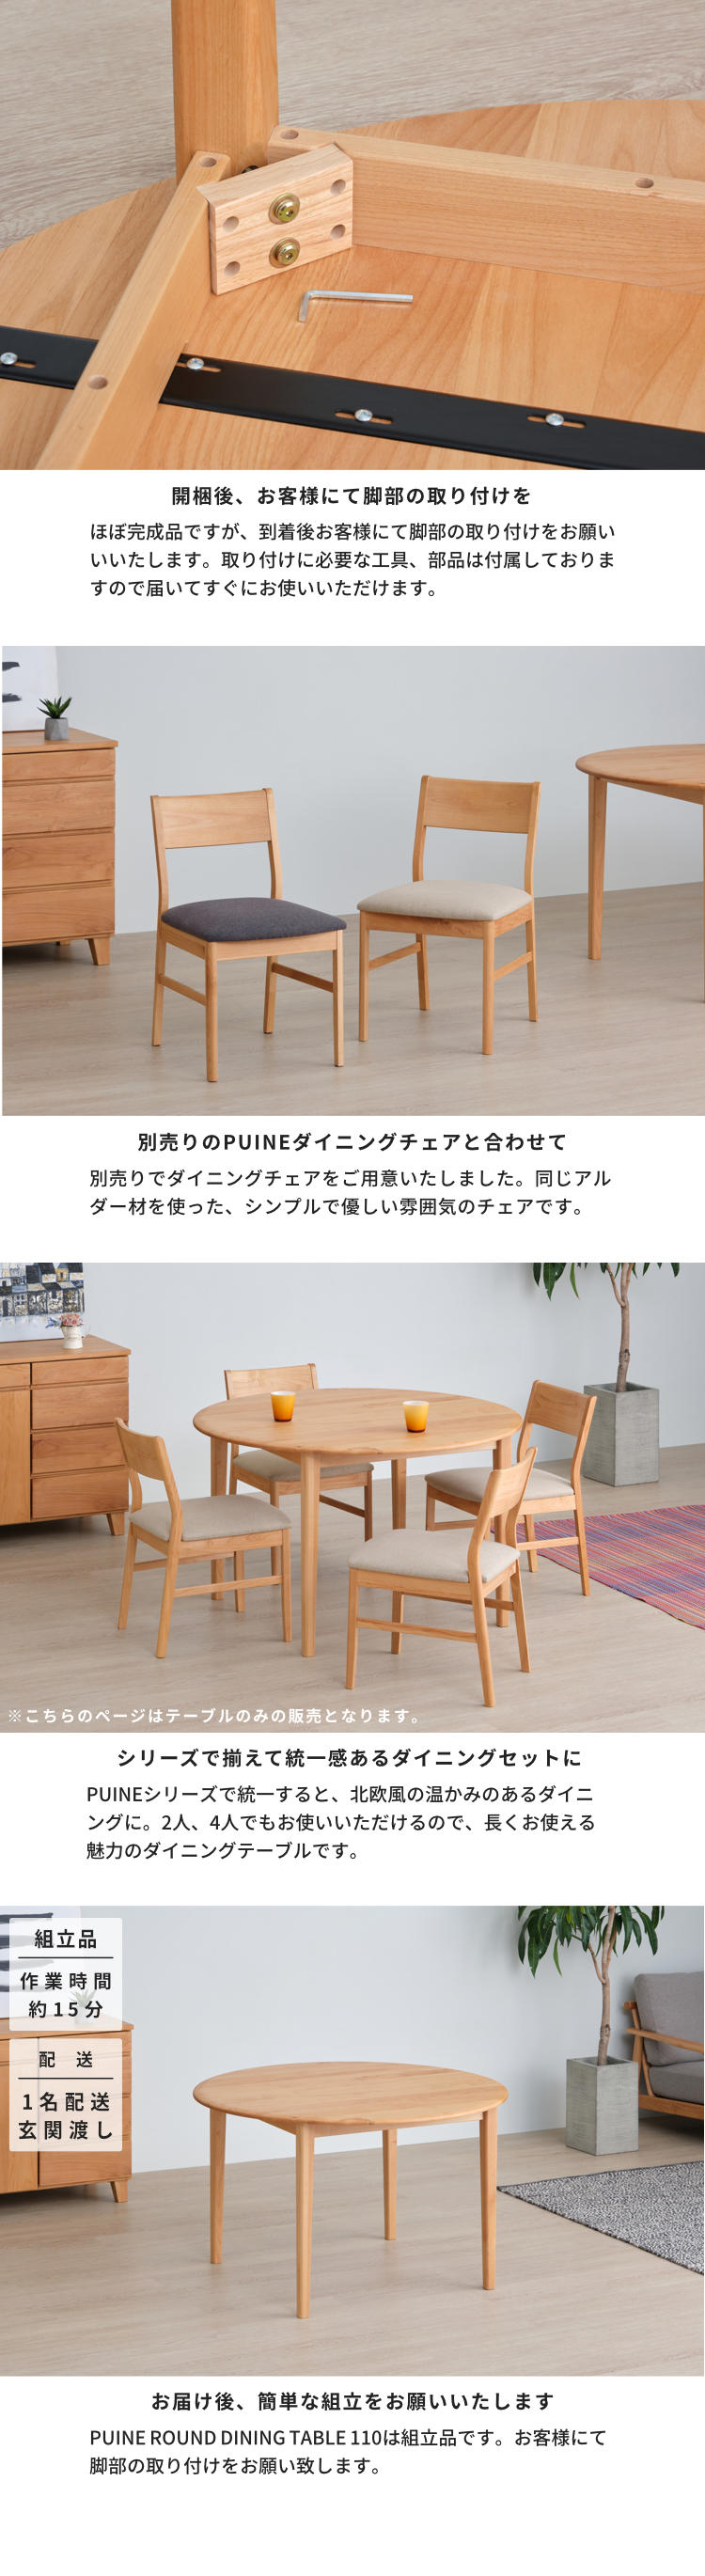 ダイニングテーブル ラウンドテーブル テーブル 丸型 プイネ ISSEIKI